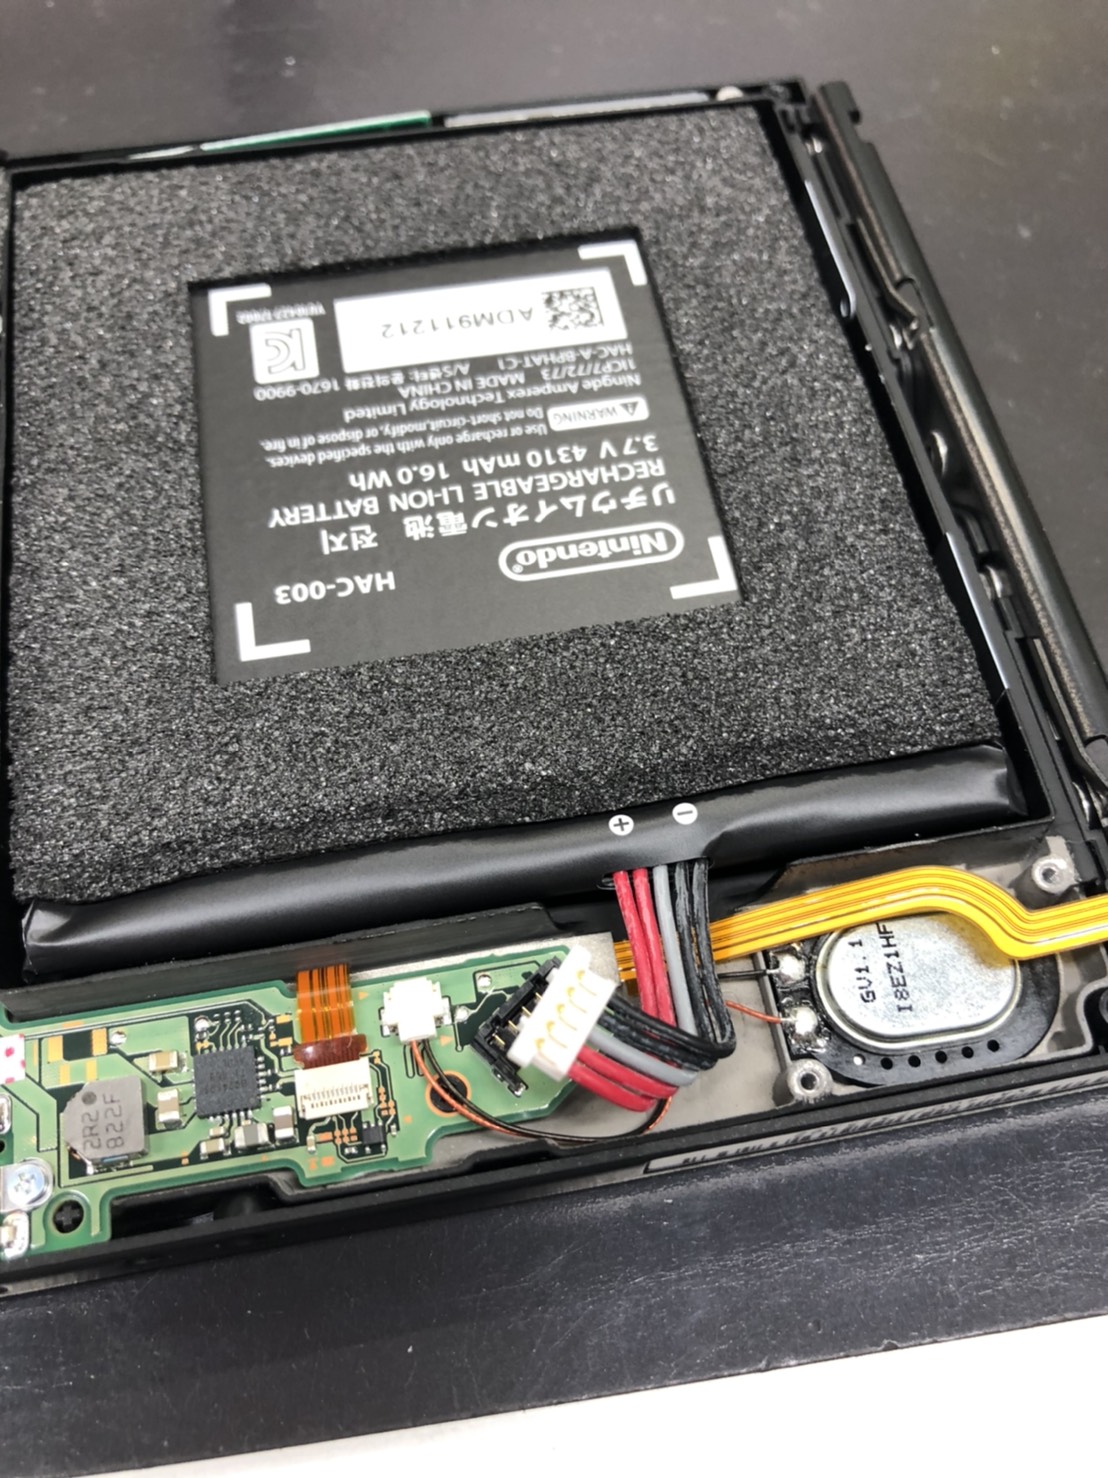 スマホスピタル鹿児島店ではNintendo switchのバッテリー交換修理も対応しております。即日対応、郵送修理も可能です